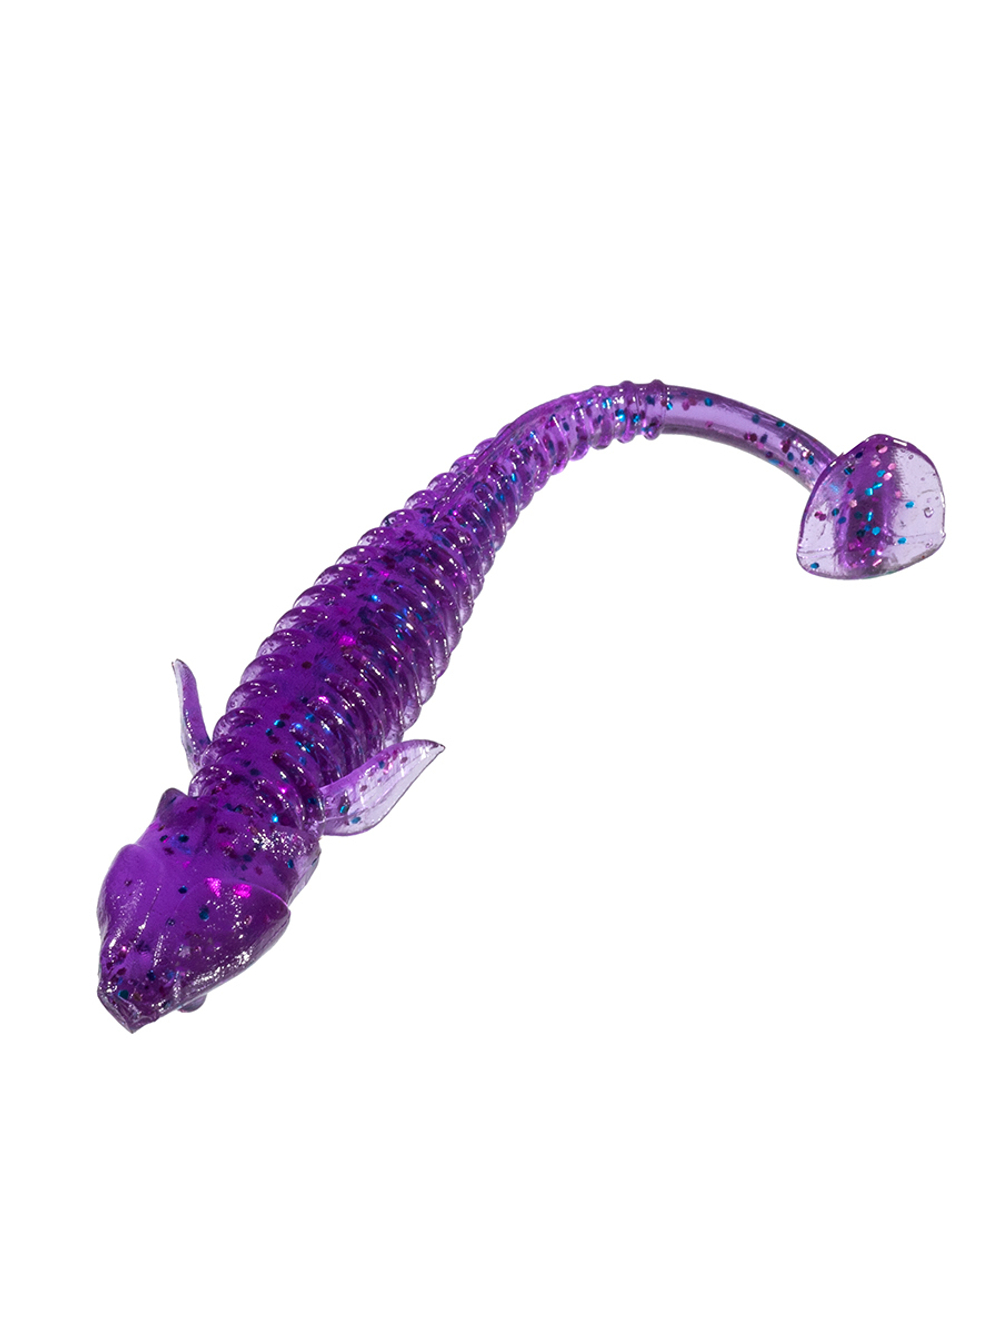 Приманка ZUB-ROCKER  90мм(3,5")-5шт, (цвет 610) фиолетовый с блестками